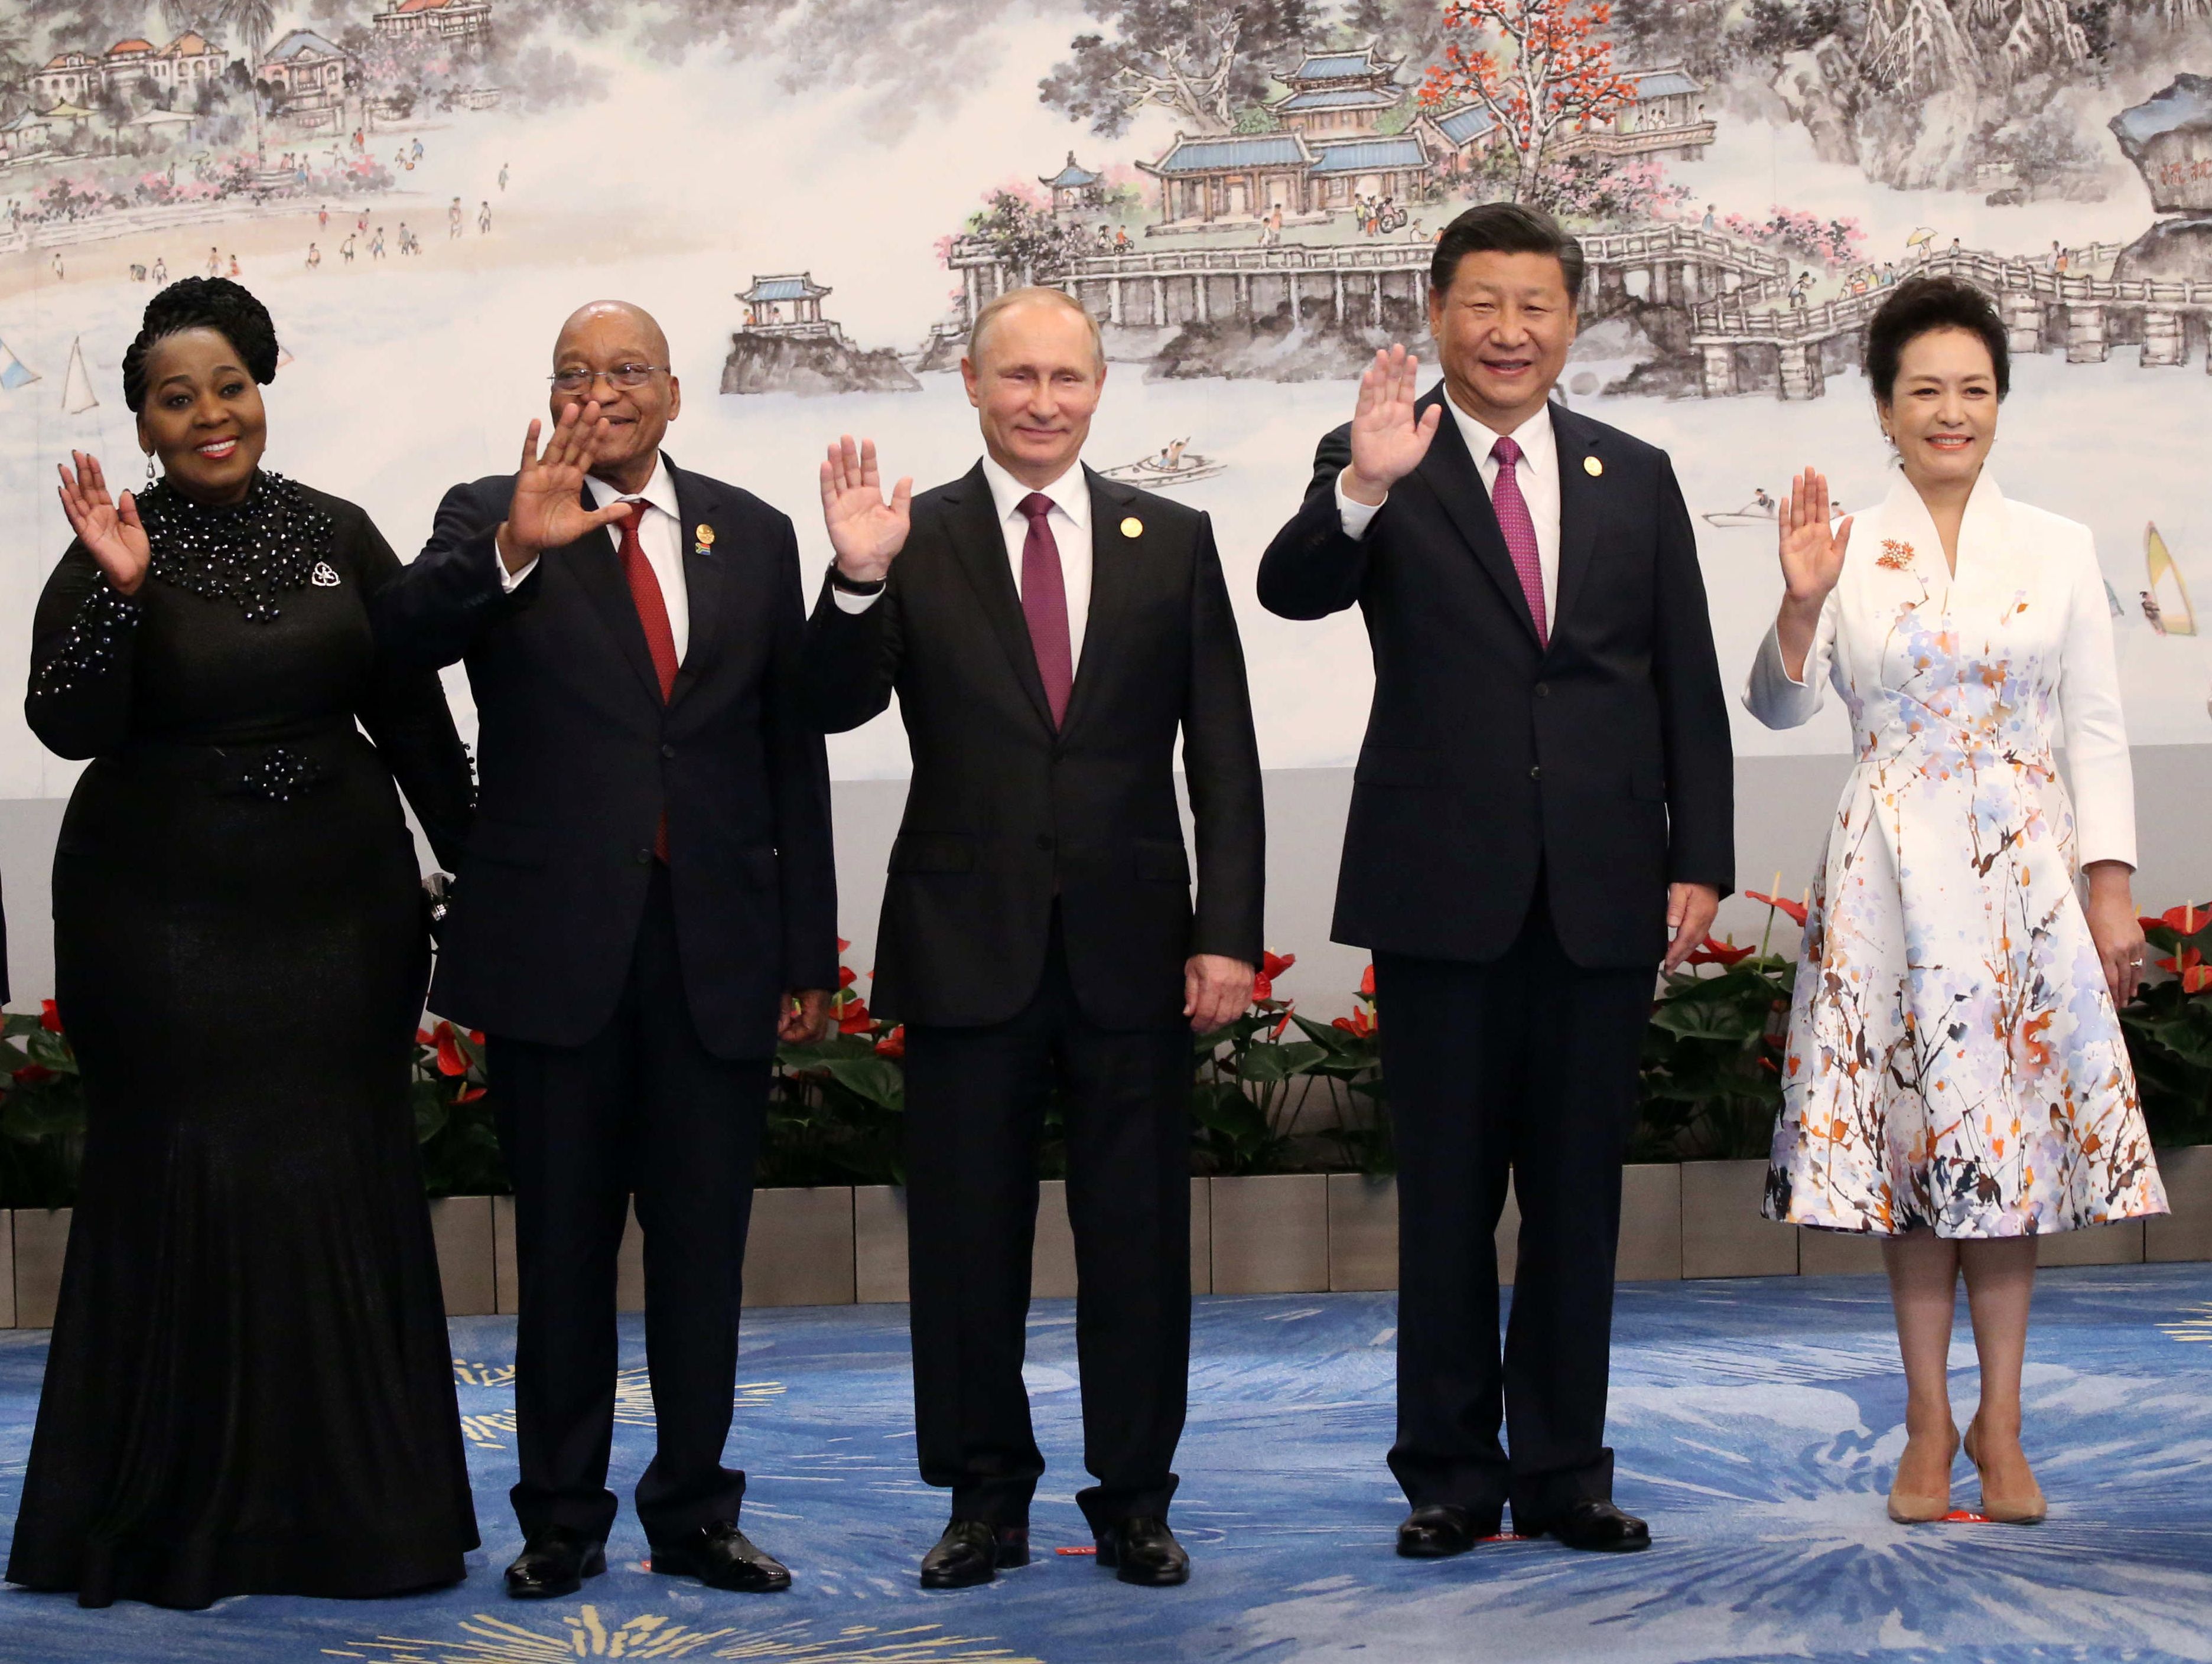 صورة تجمع بوتين برئيسا الصين وجنوب أفريقيا وقرينتهما